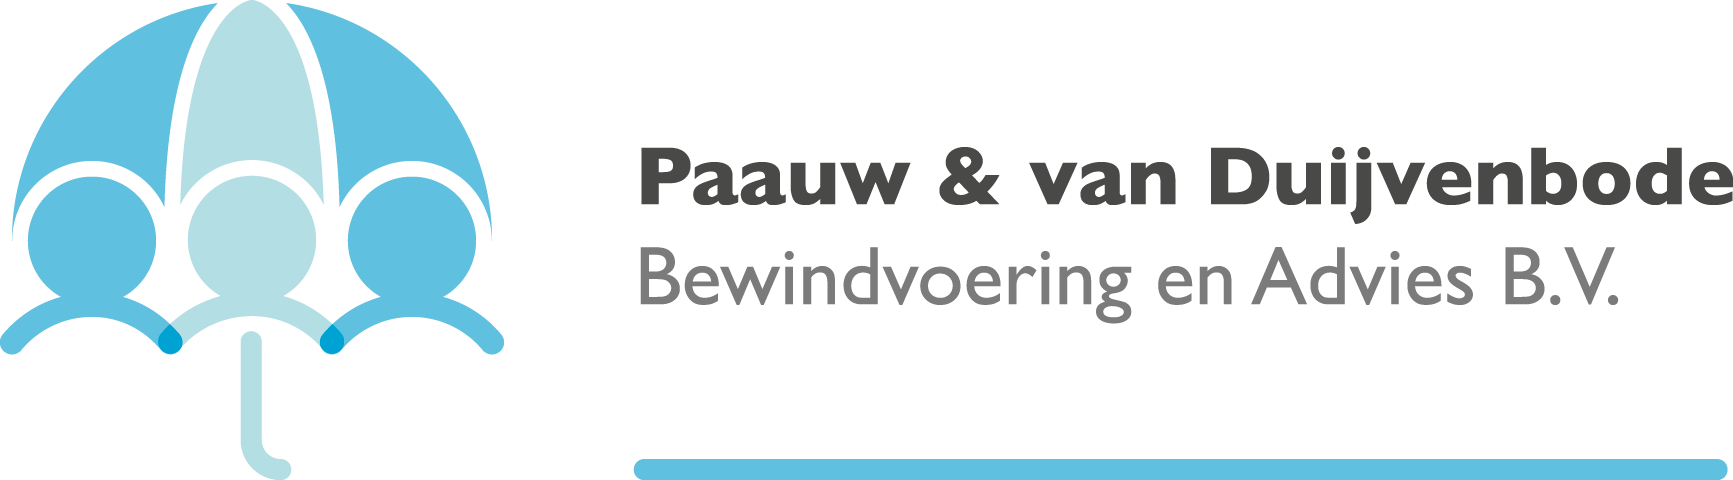 Paauw & van Duijvenbode – Bewindvoering en Advies B.V.